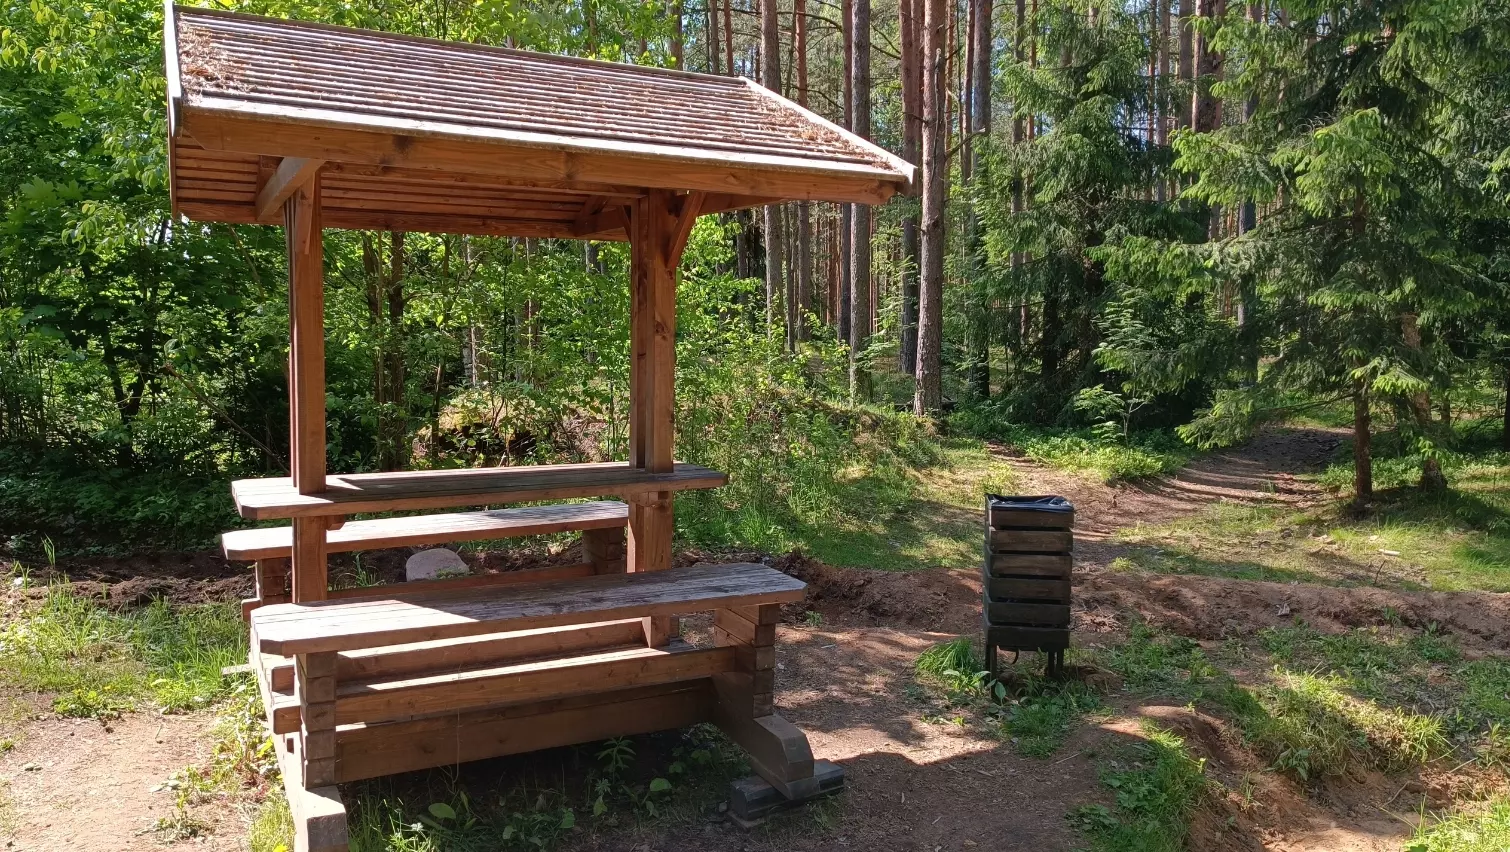 45 площадок для отдыха на природе подготовили в лесах Санкт-Петербурга